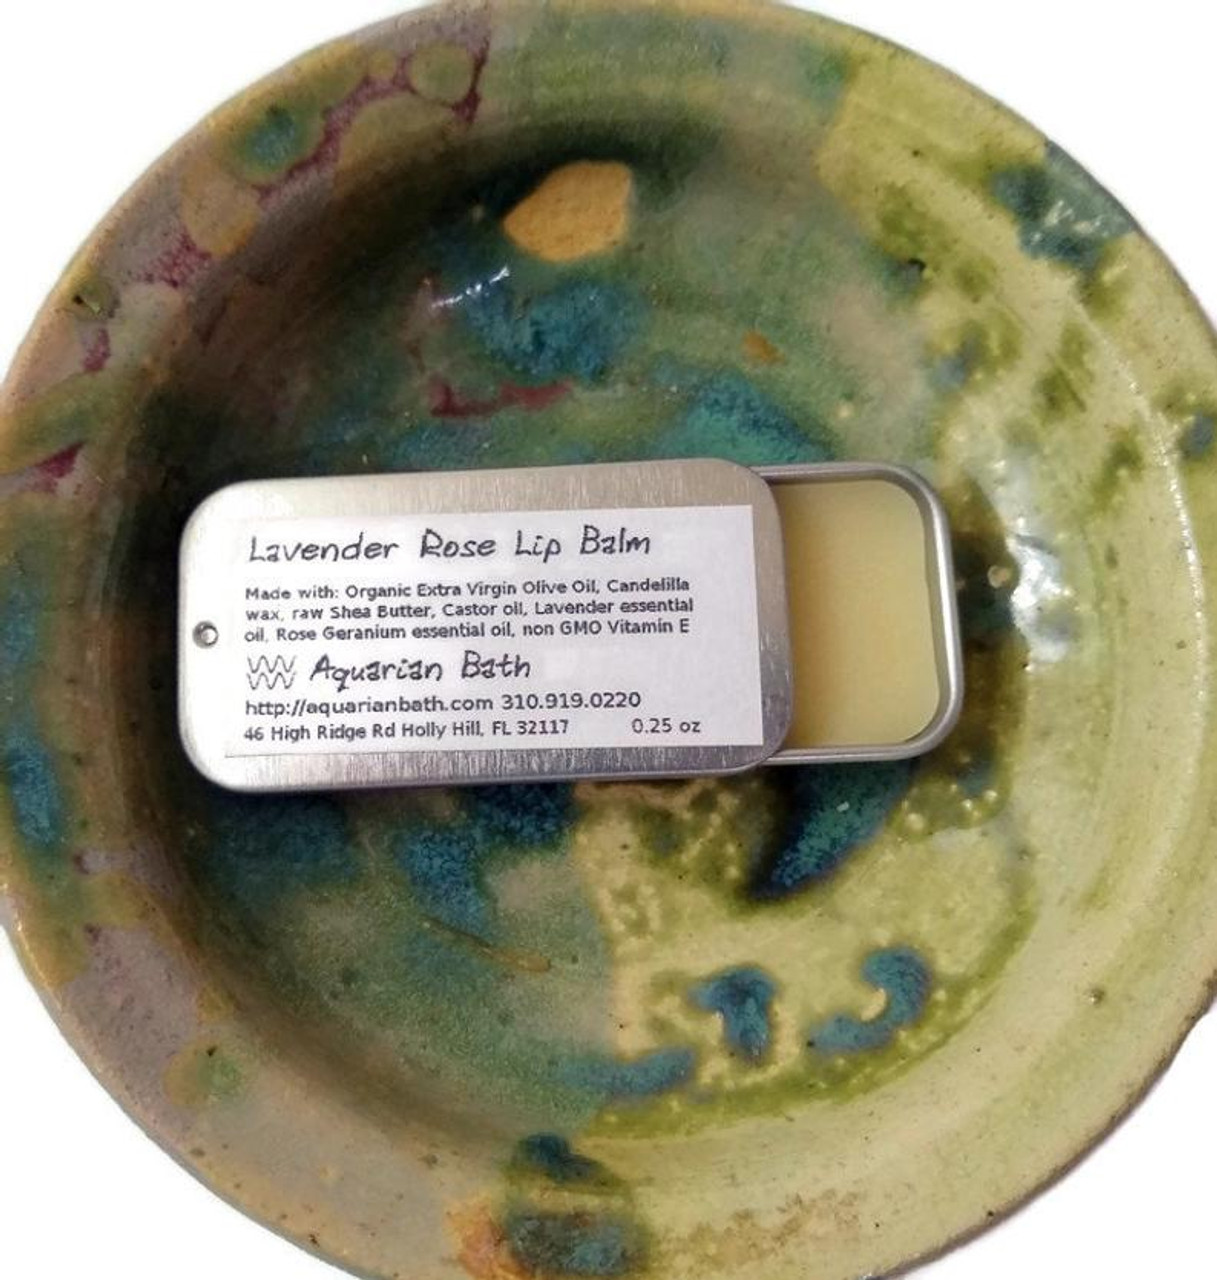 Aquarian Bath Coconut Lip Balm in 0.25 oz slide tin